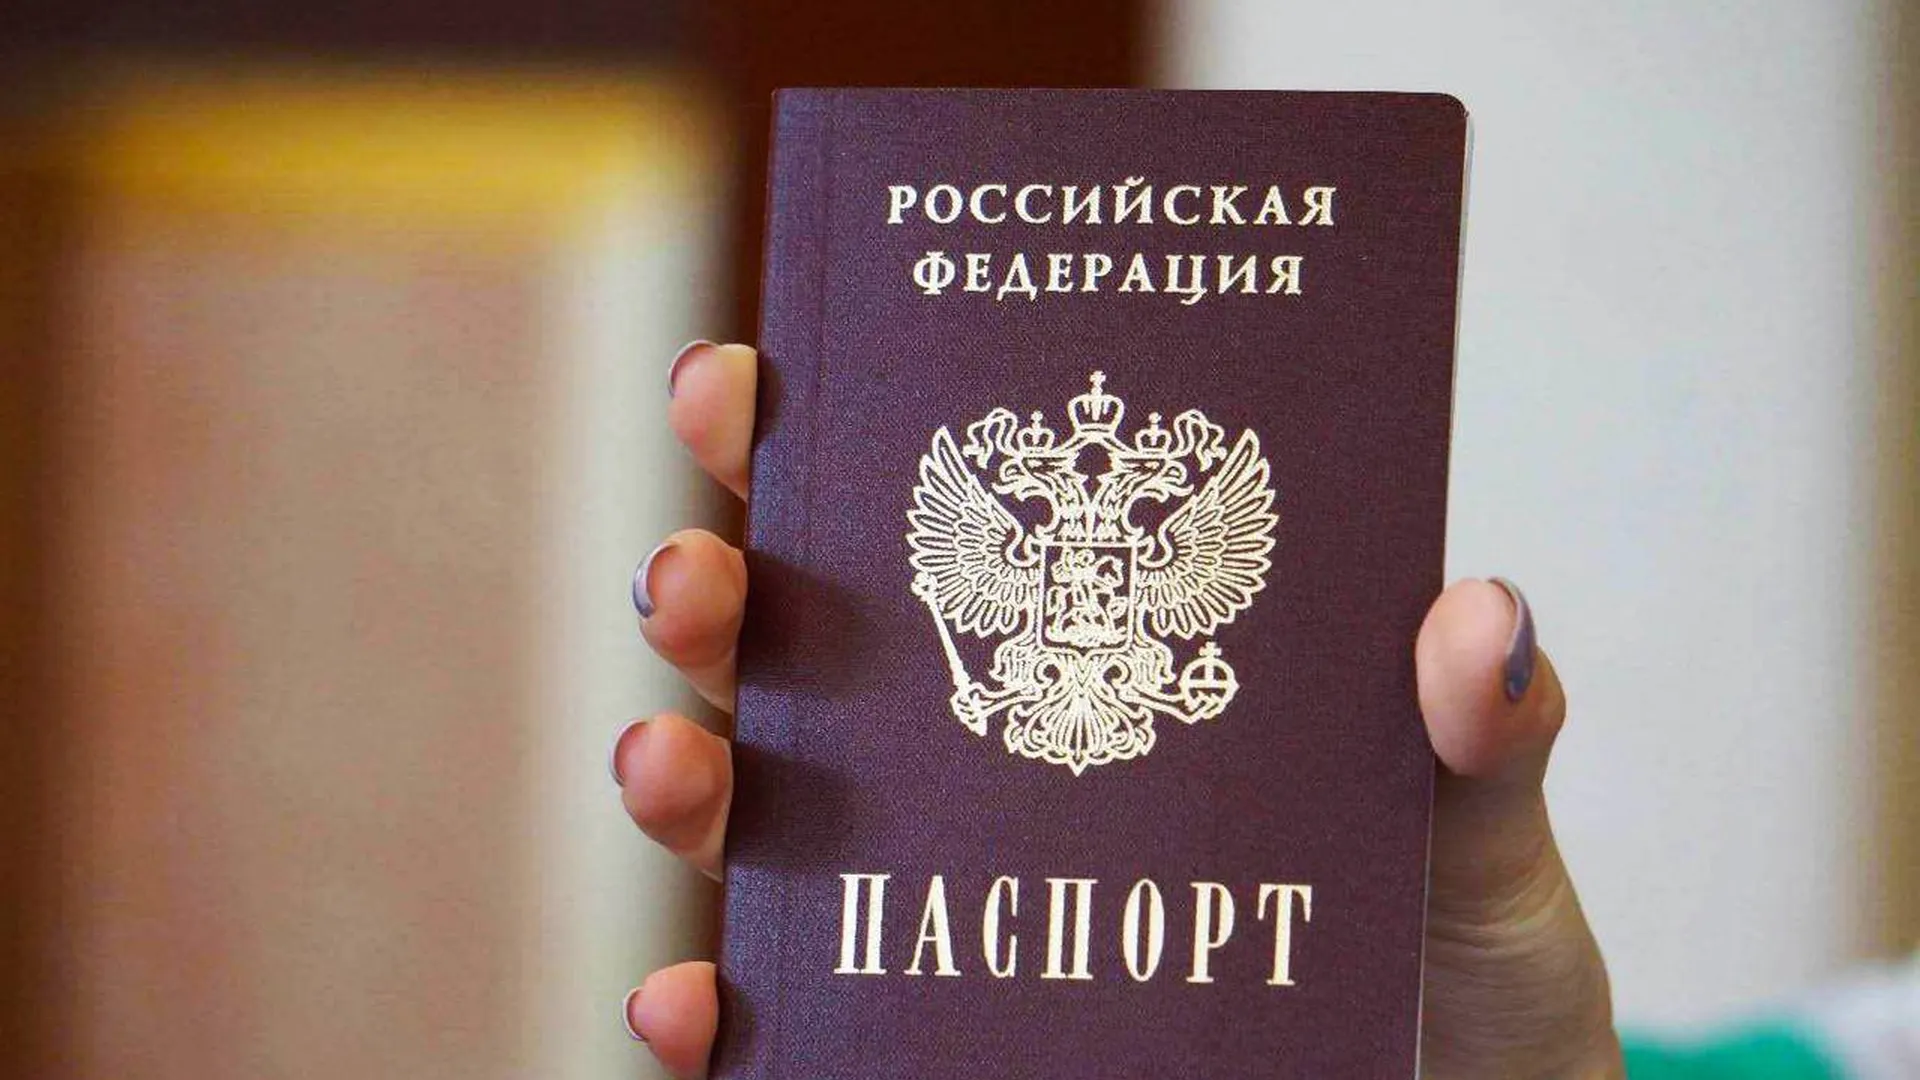 Оформление паспорта в России стало быстрее